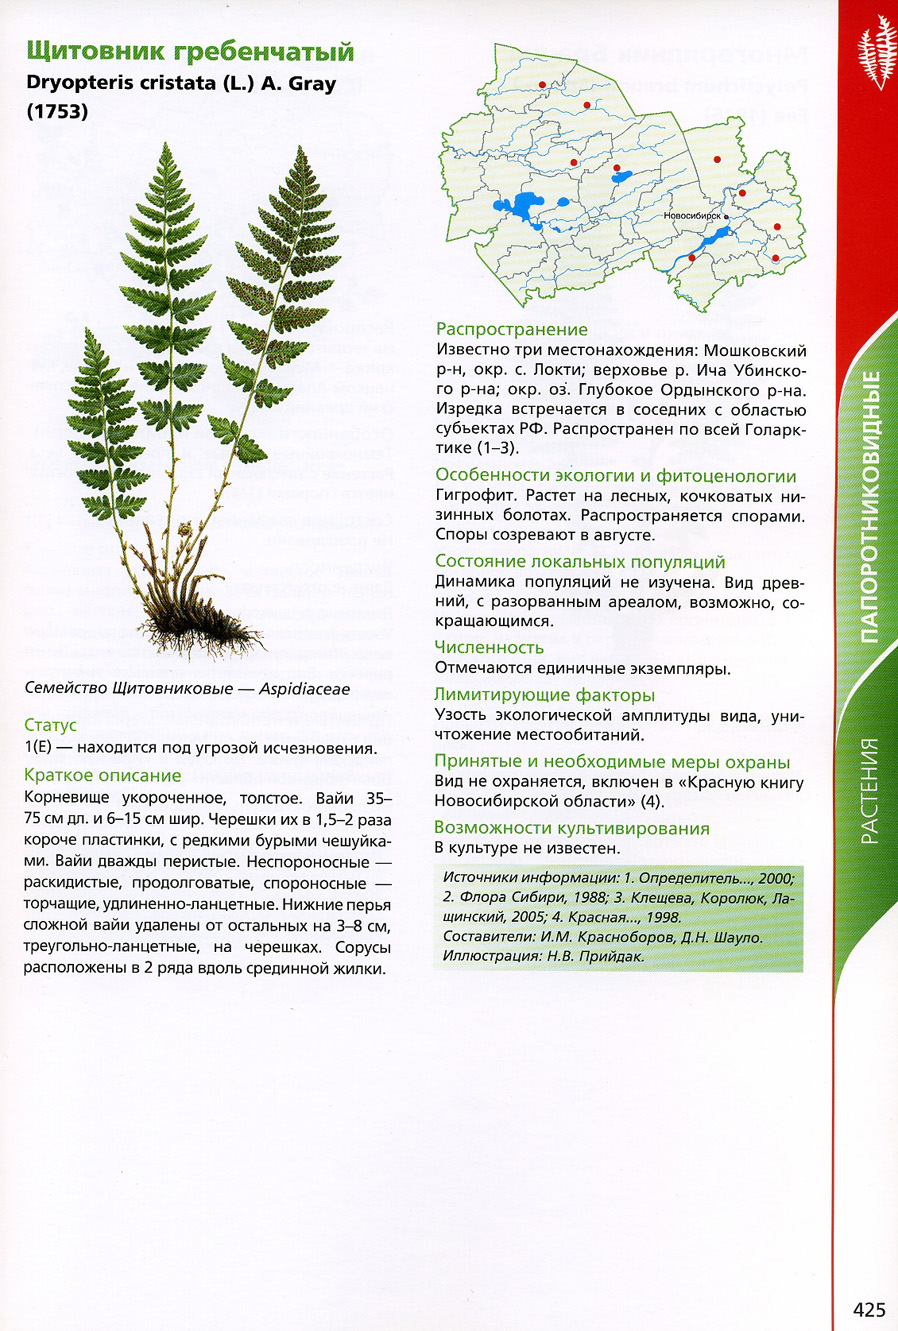 Растения из красной книги новосибирской области фото и описание